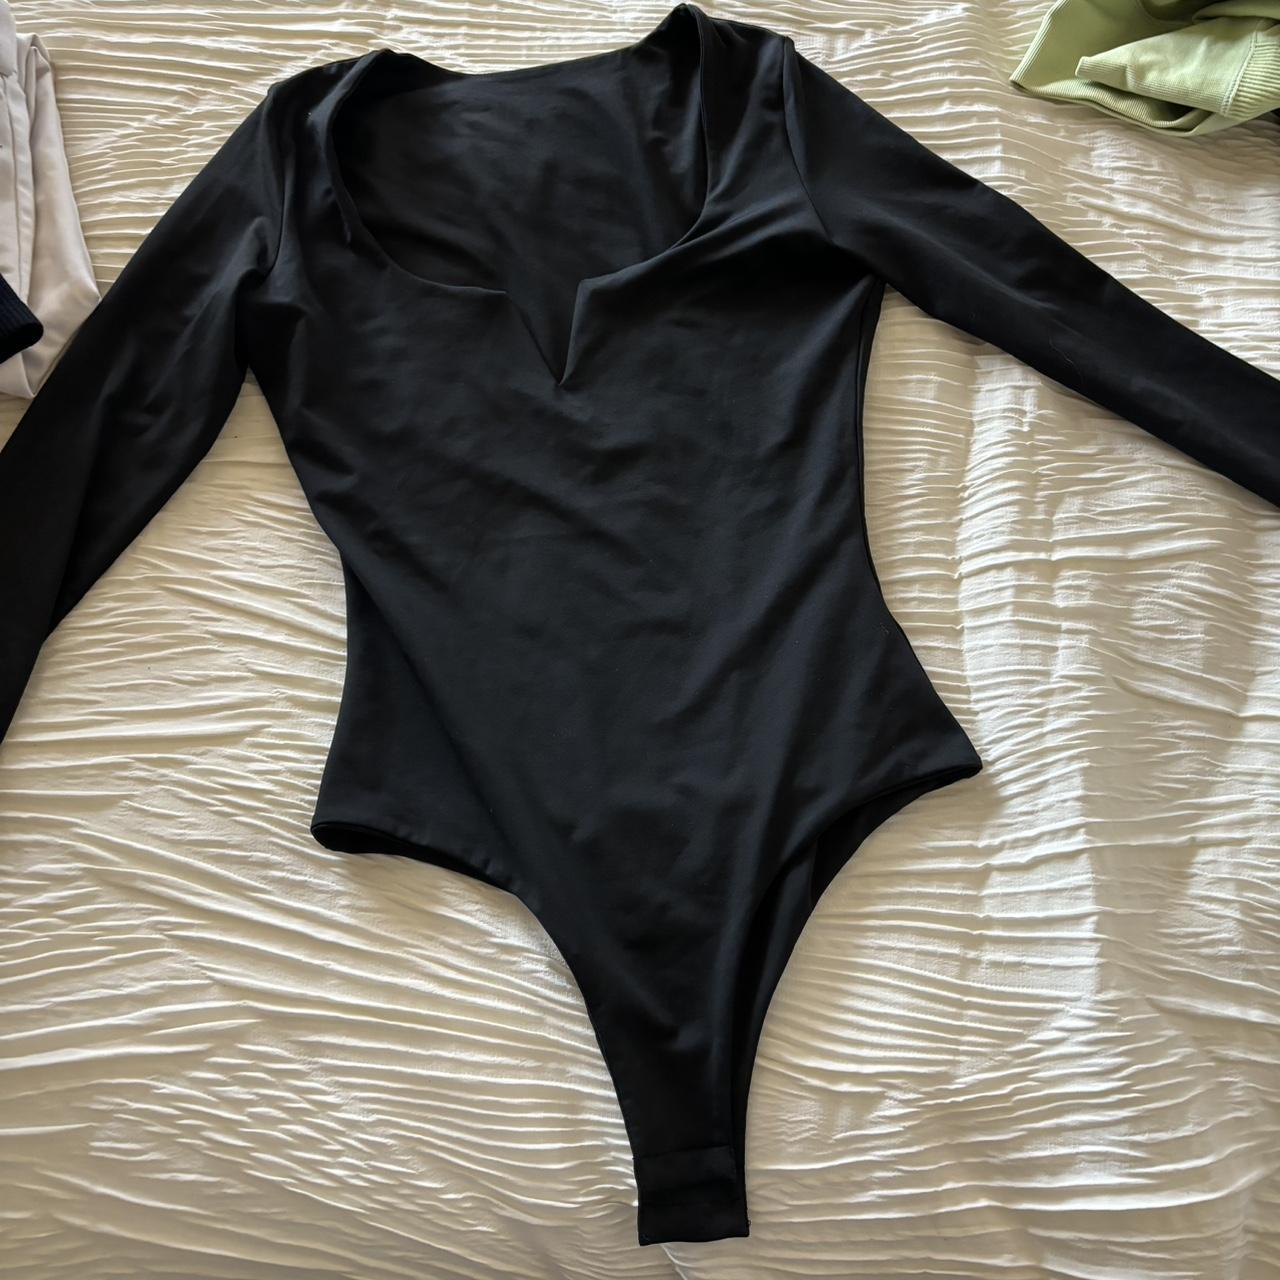 Black bodysuit - Depop